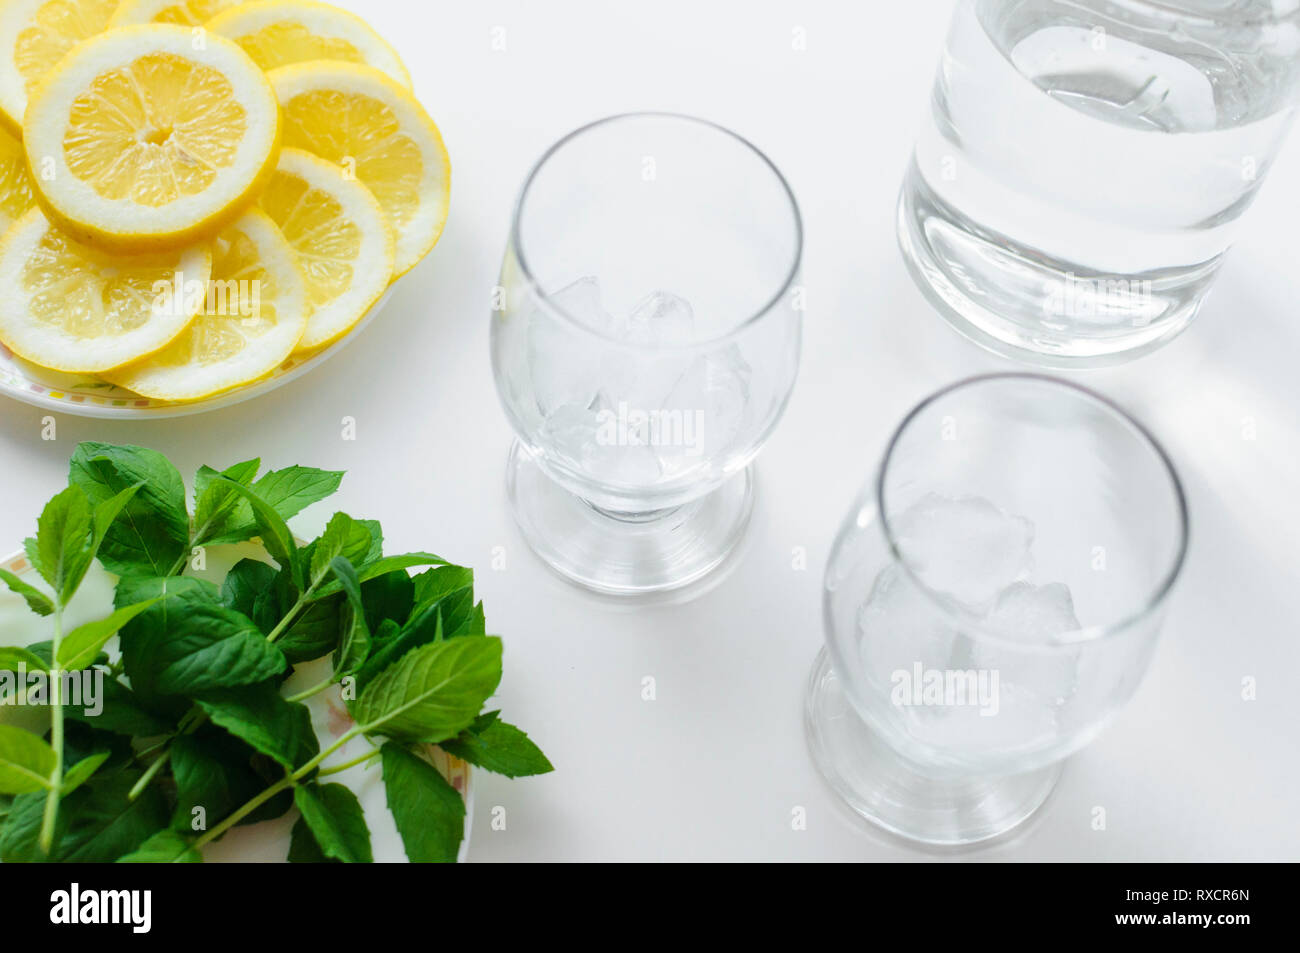 Deux verres transparents avec des cubes de glace et ingrédients pour prendre un verre, comme le citron et feuilles de menthe fraîche. Banque D'Images